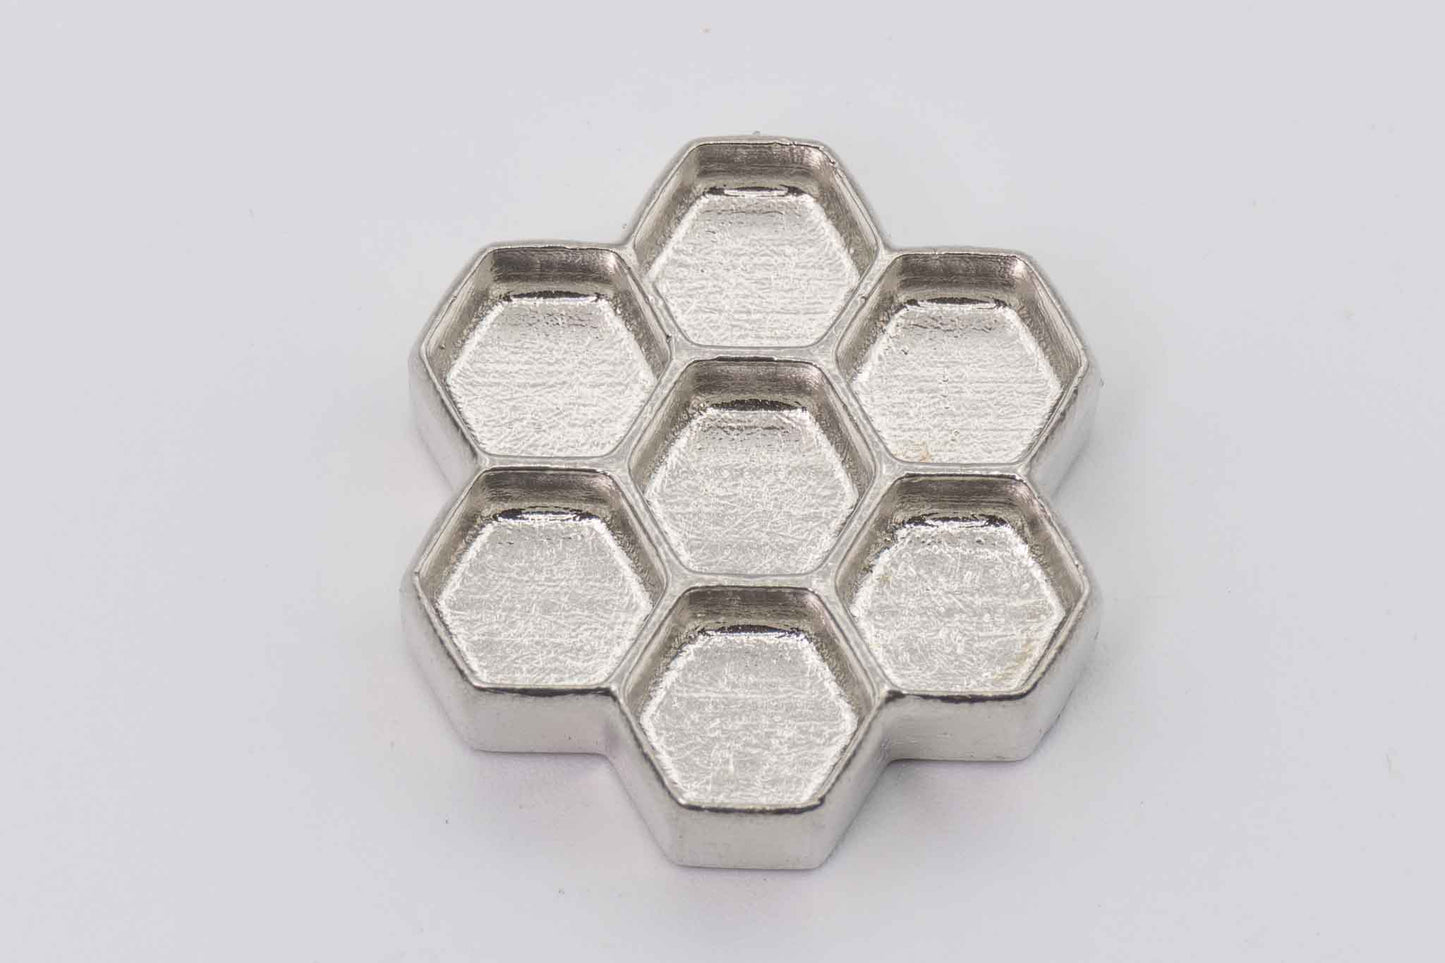 Honeycomb jewelry